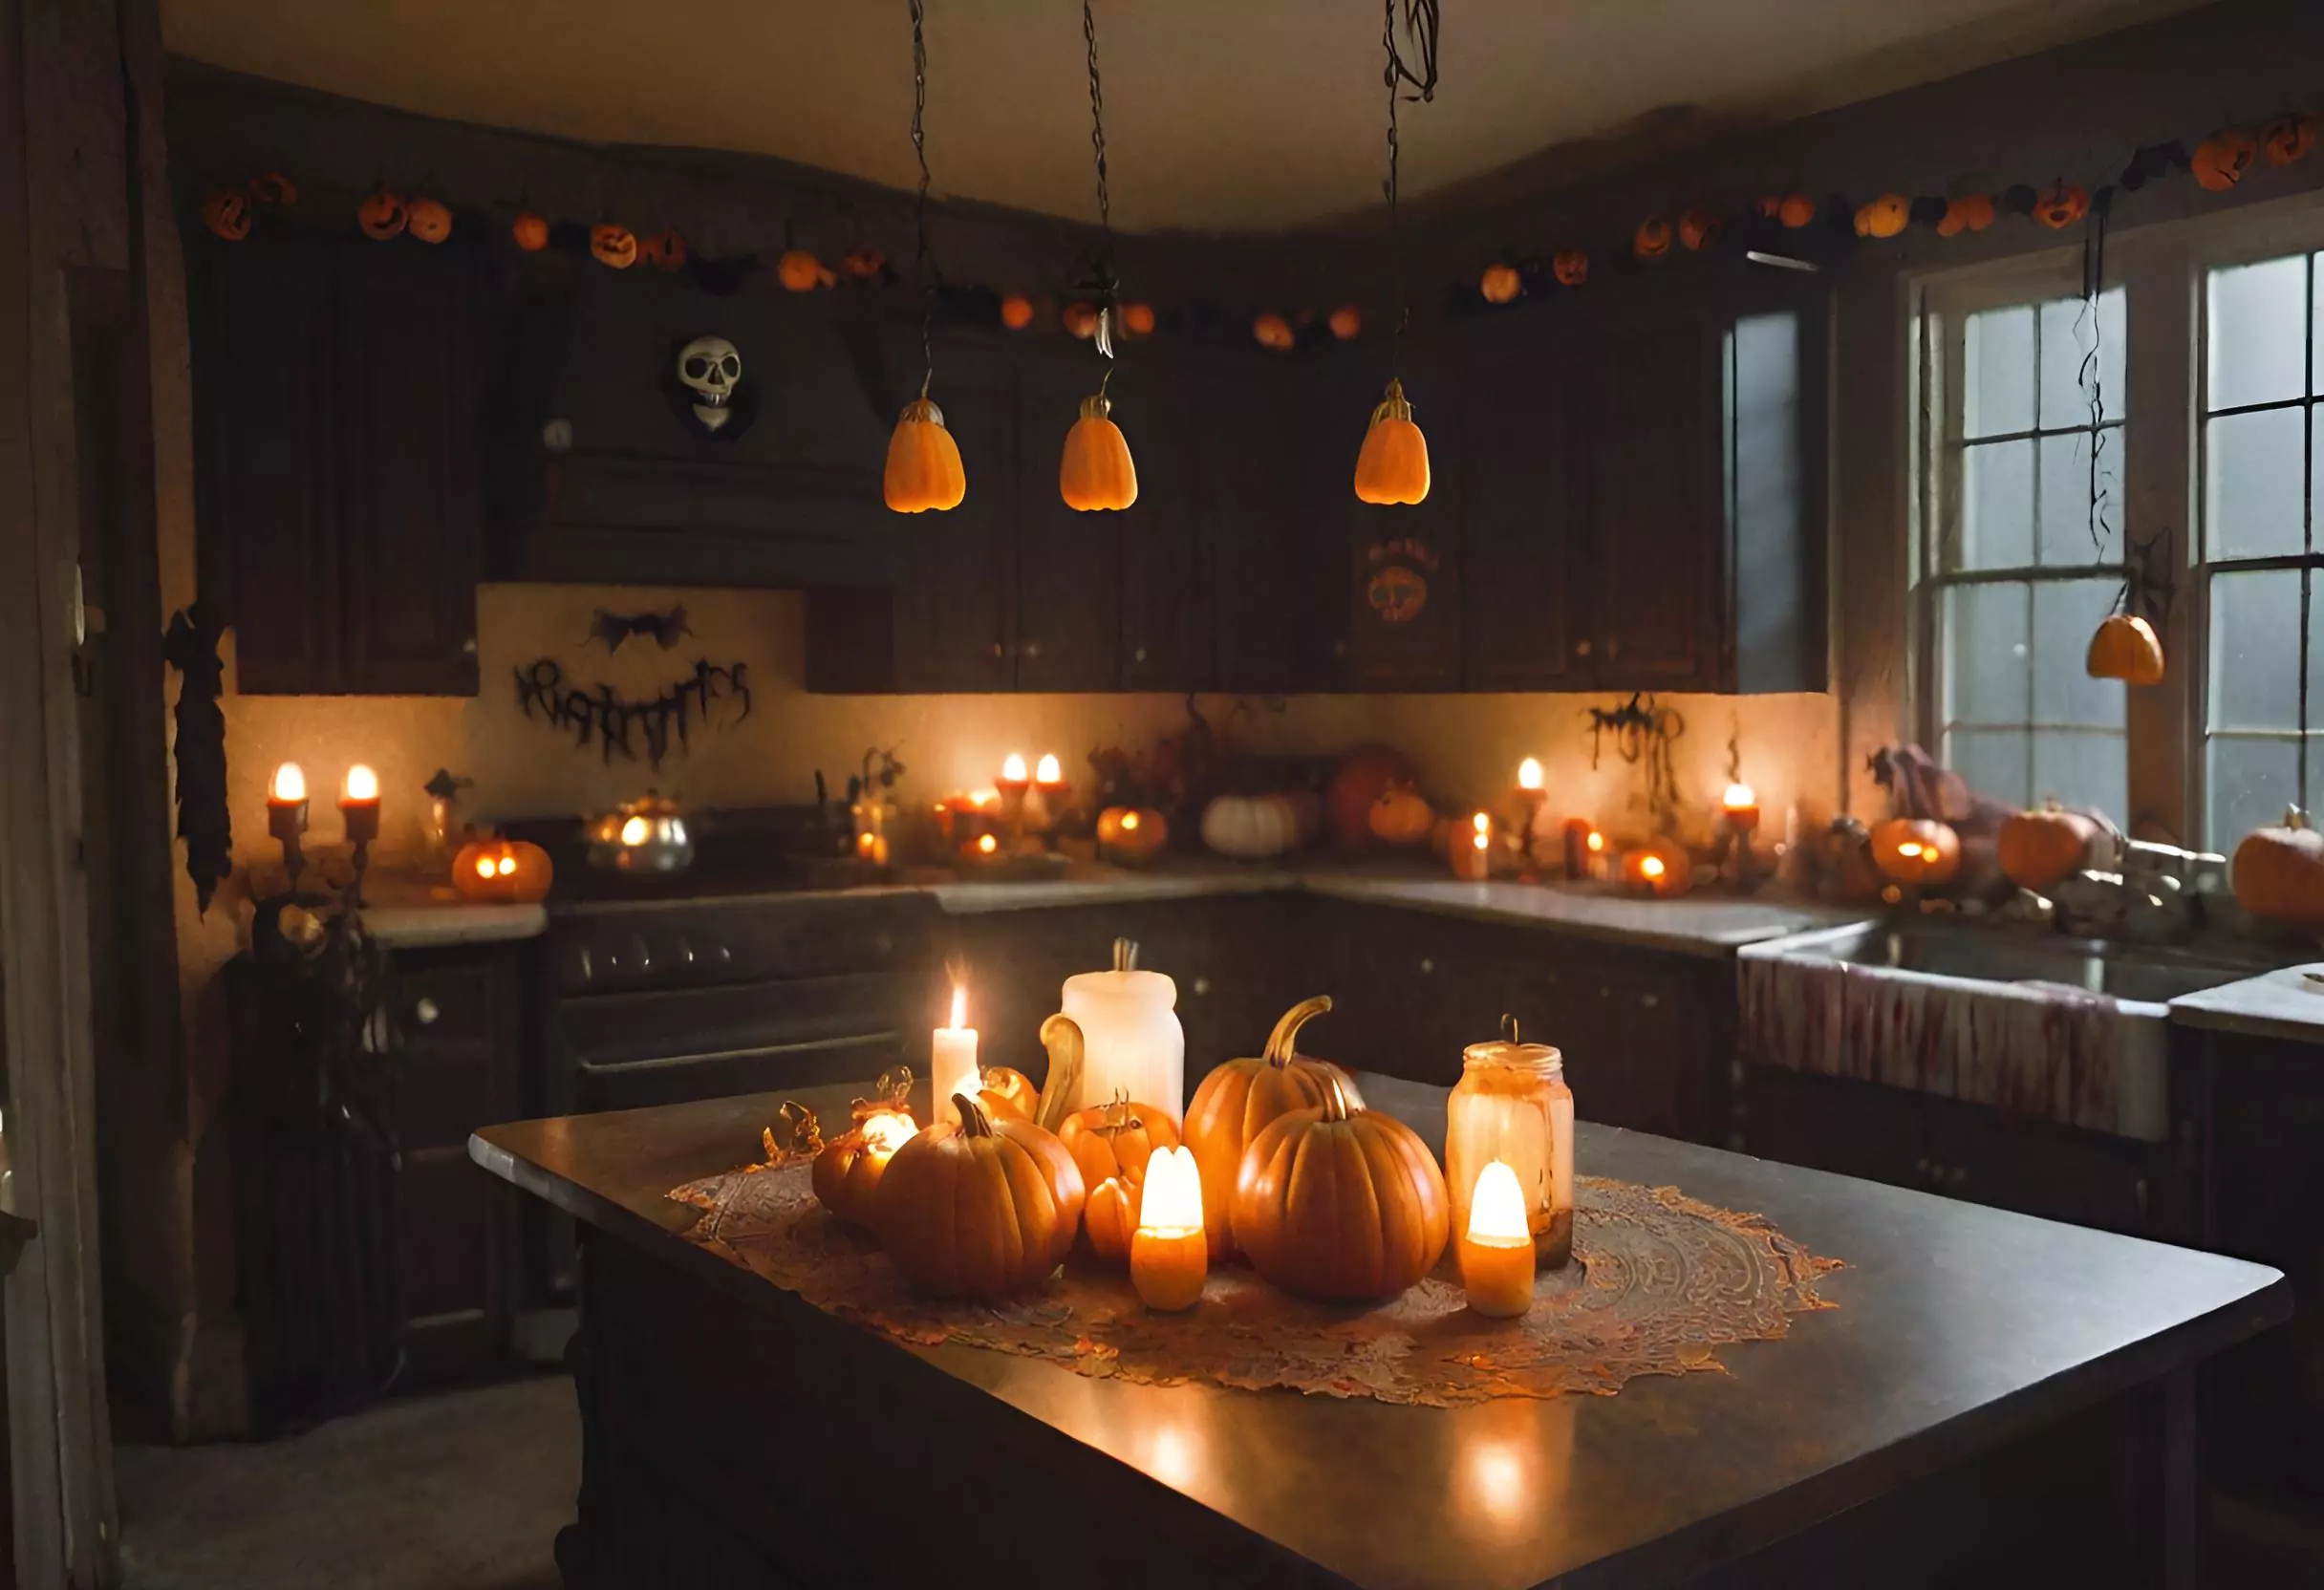 Halloween kitchen decor ideas